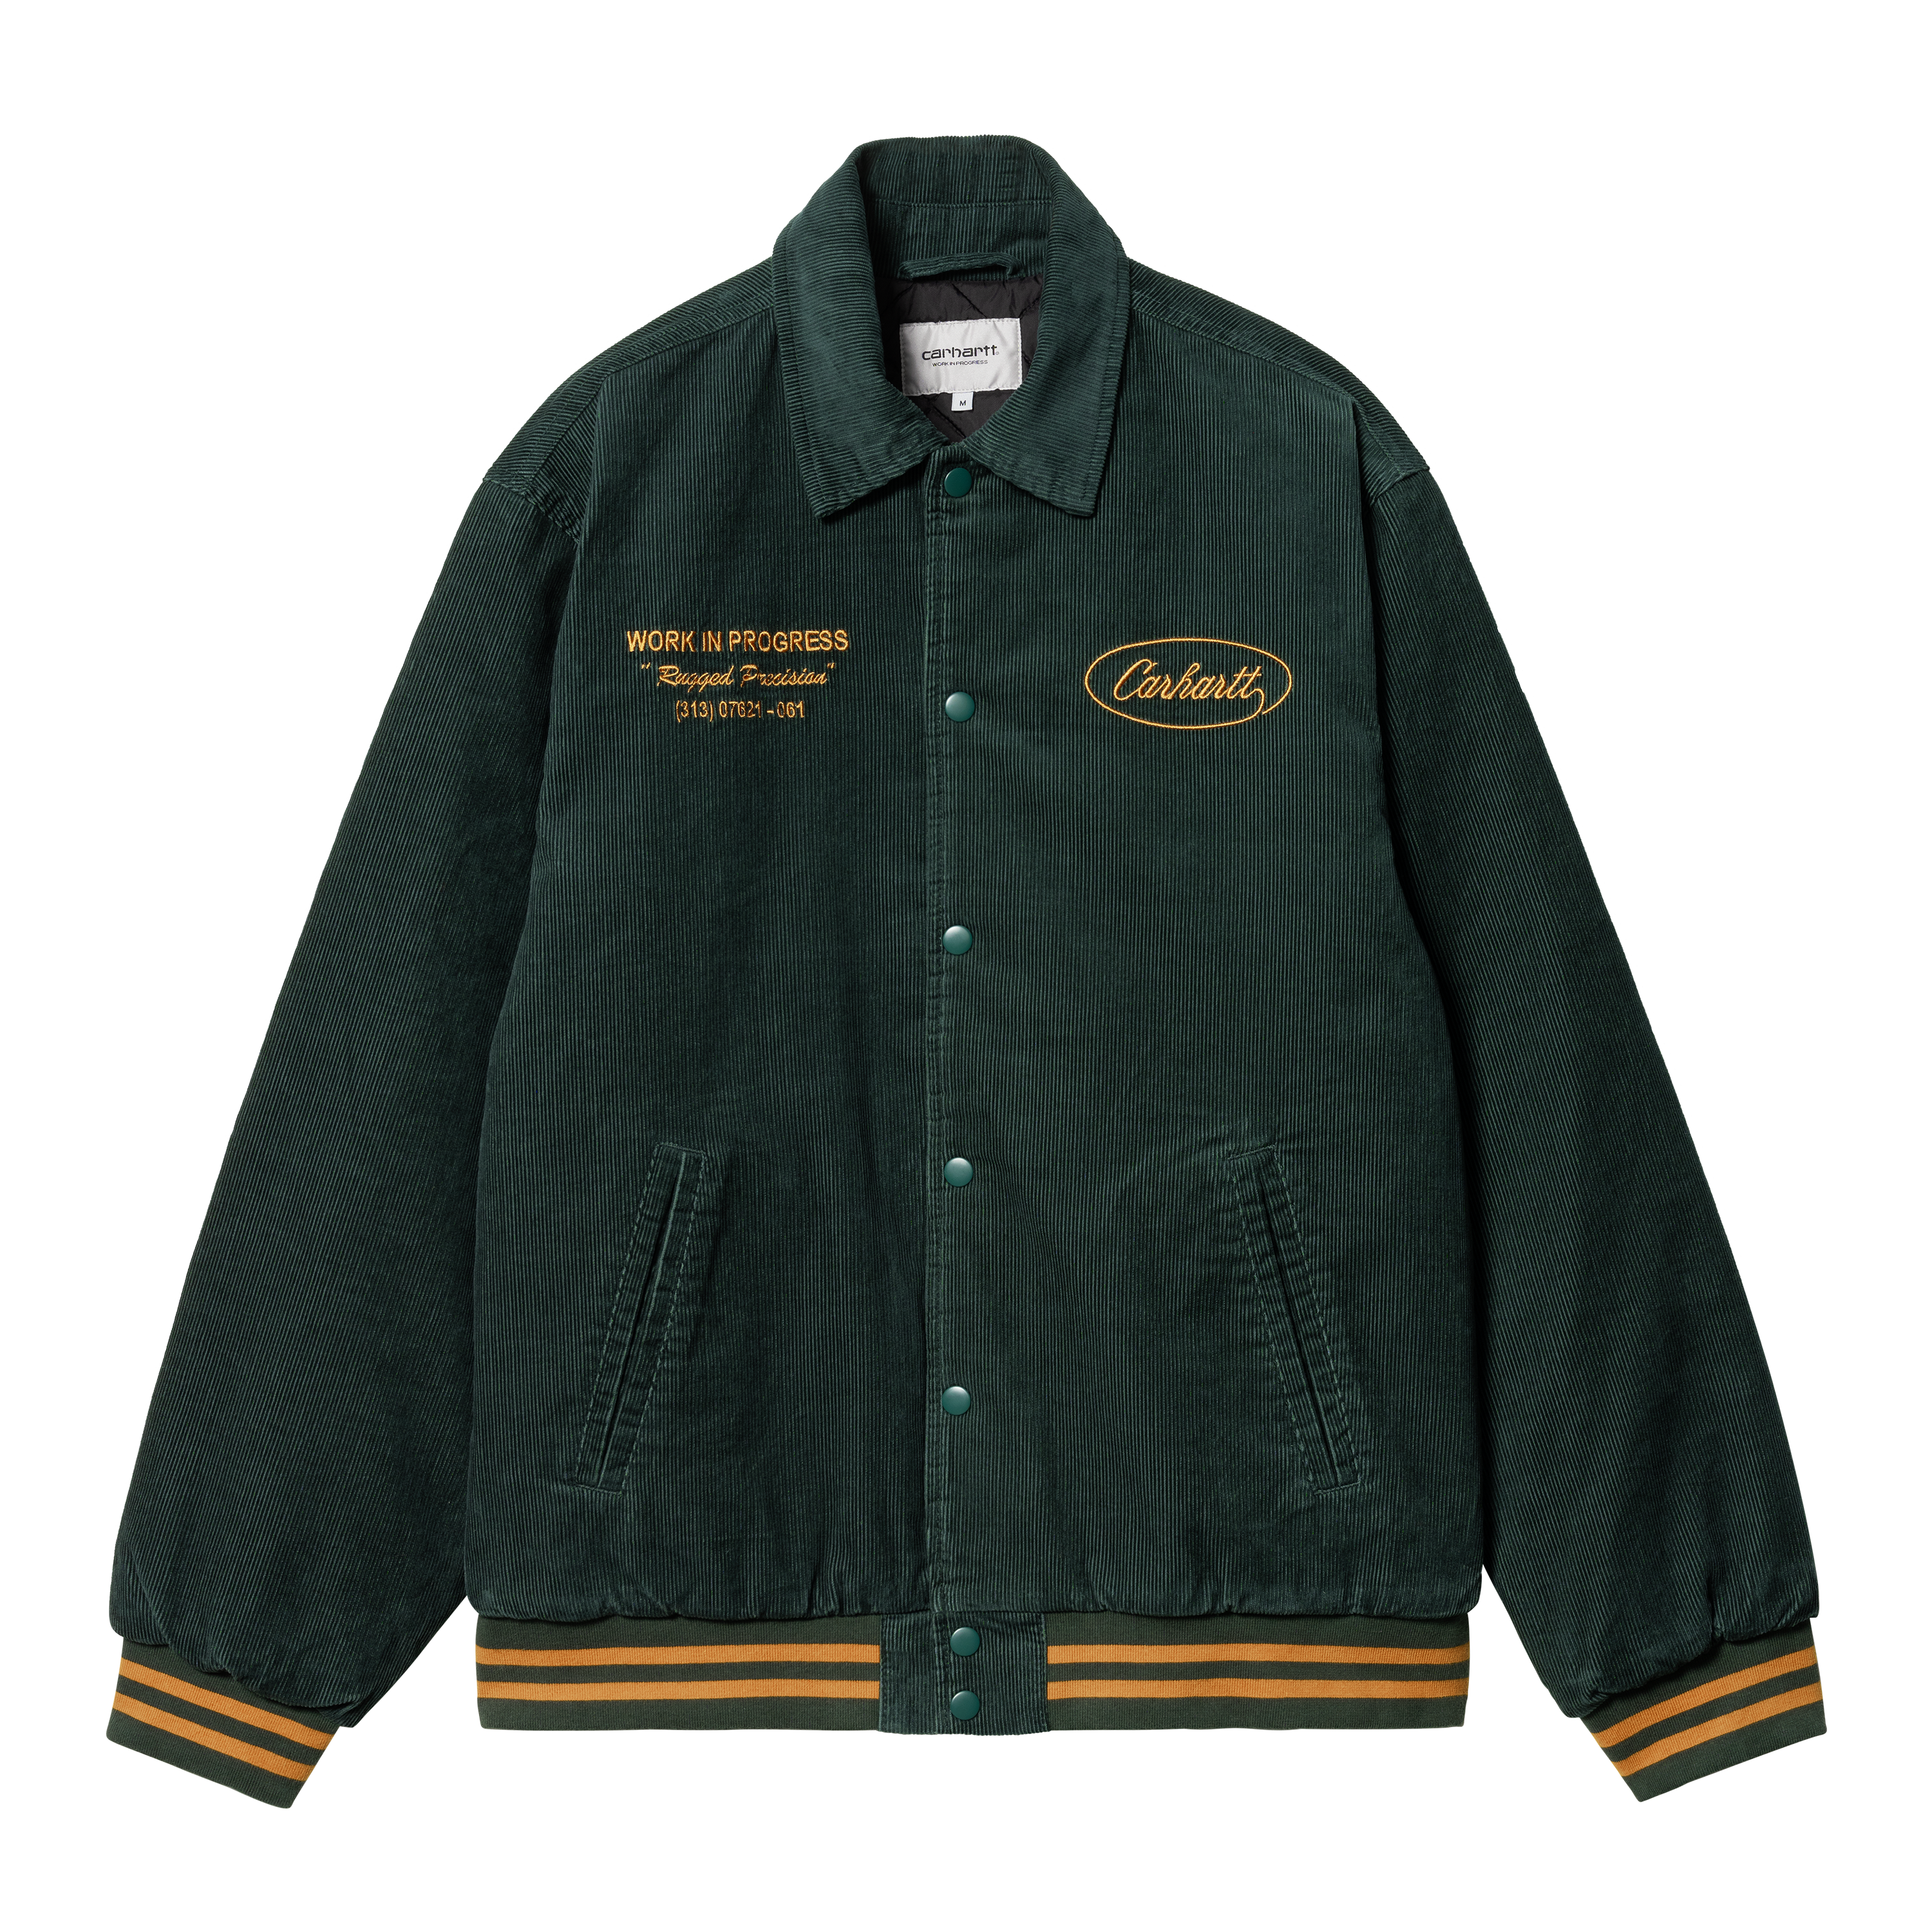 Carhartt WIP Rugged Letterman Jacket in Verde